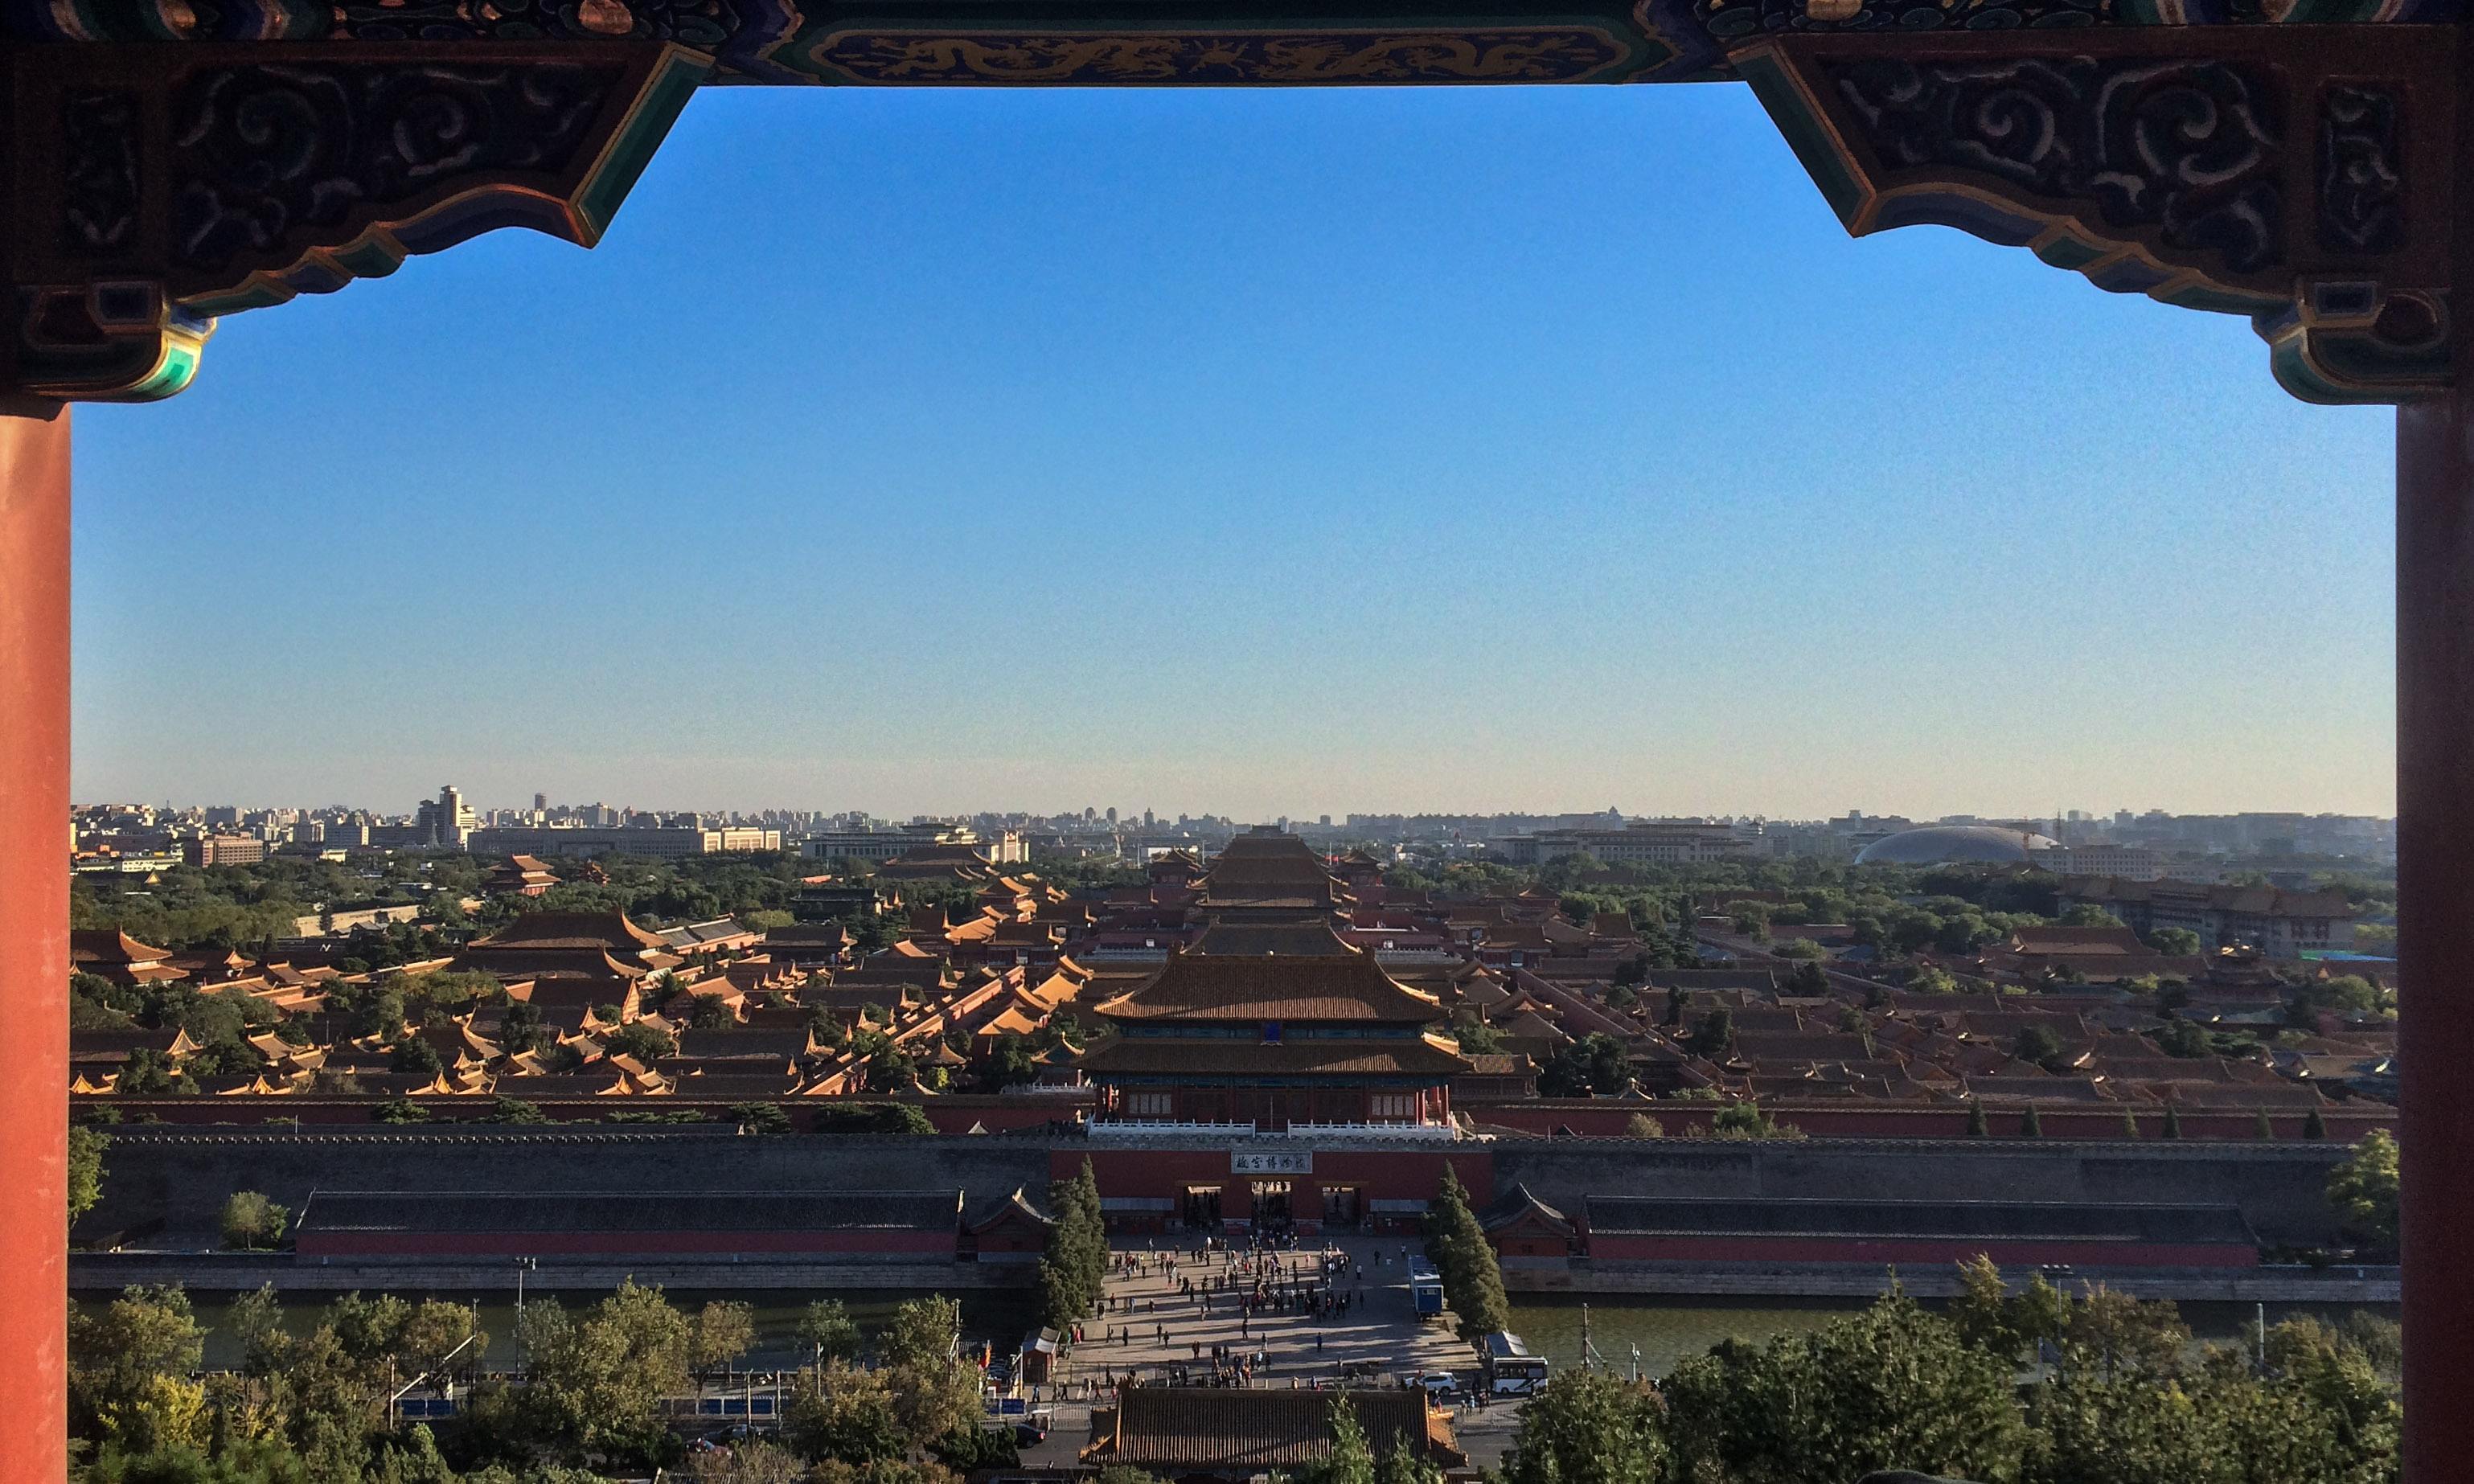 中国古代皇宫图片大全图片